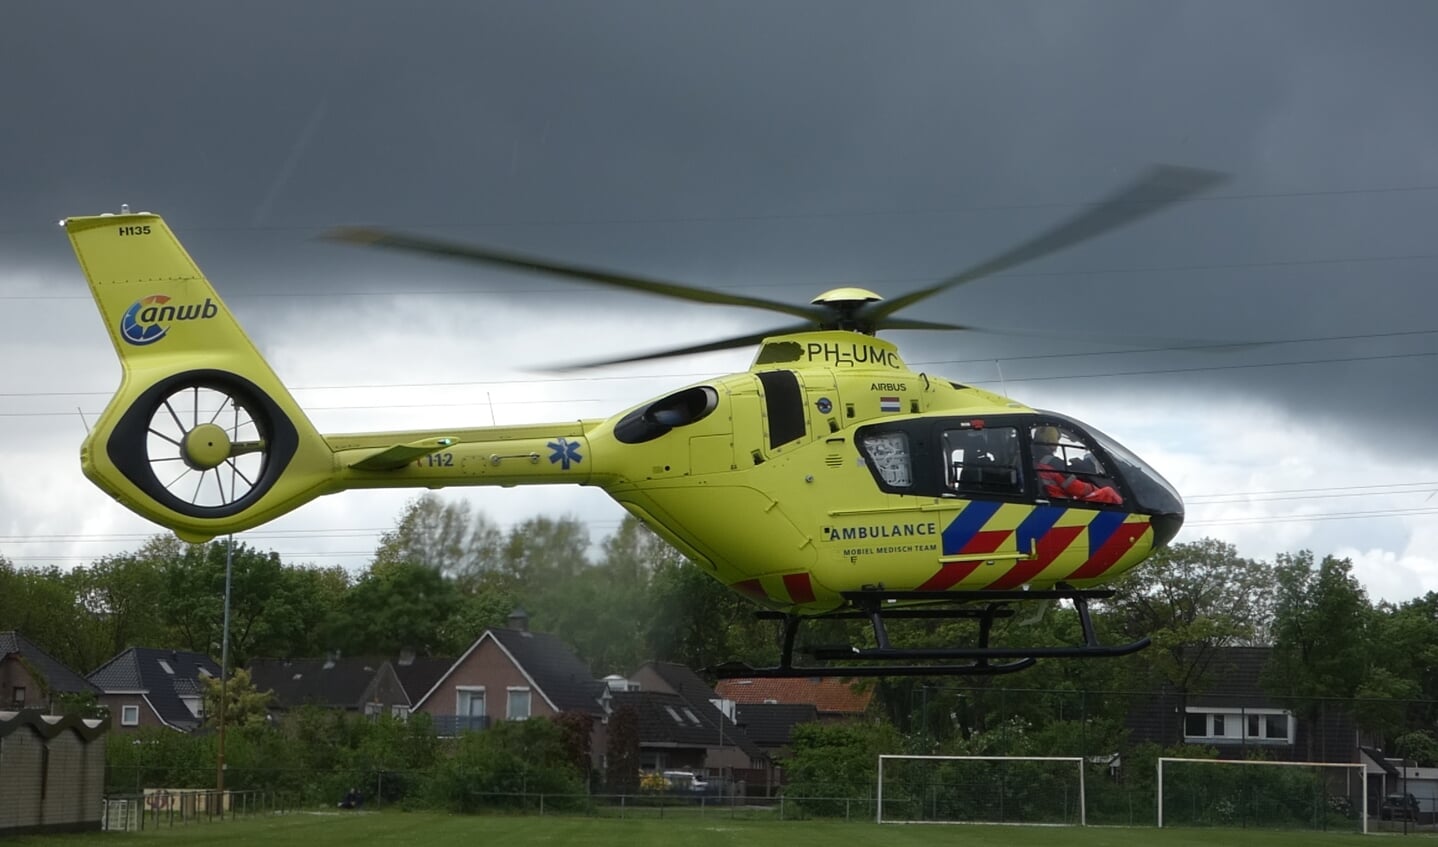 Traumahelikopter voor ongeval IJsselstraat. (Foto: Thomas)